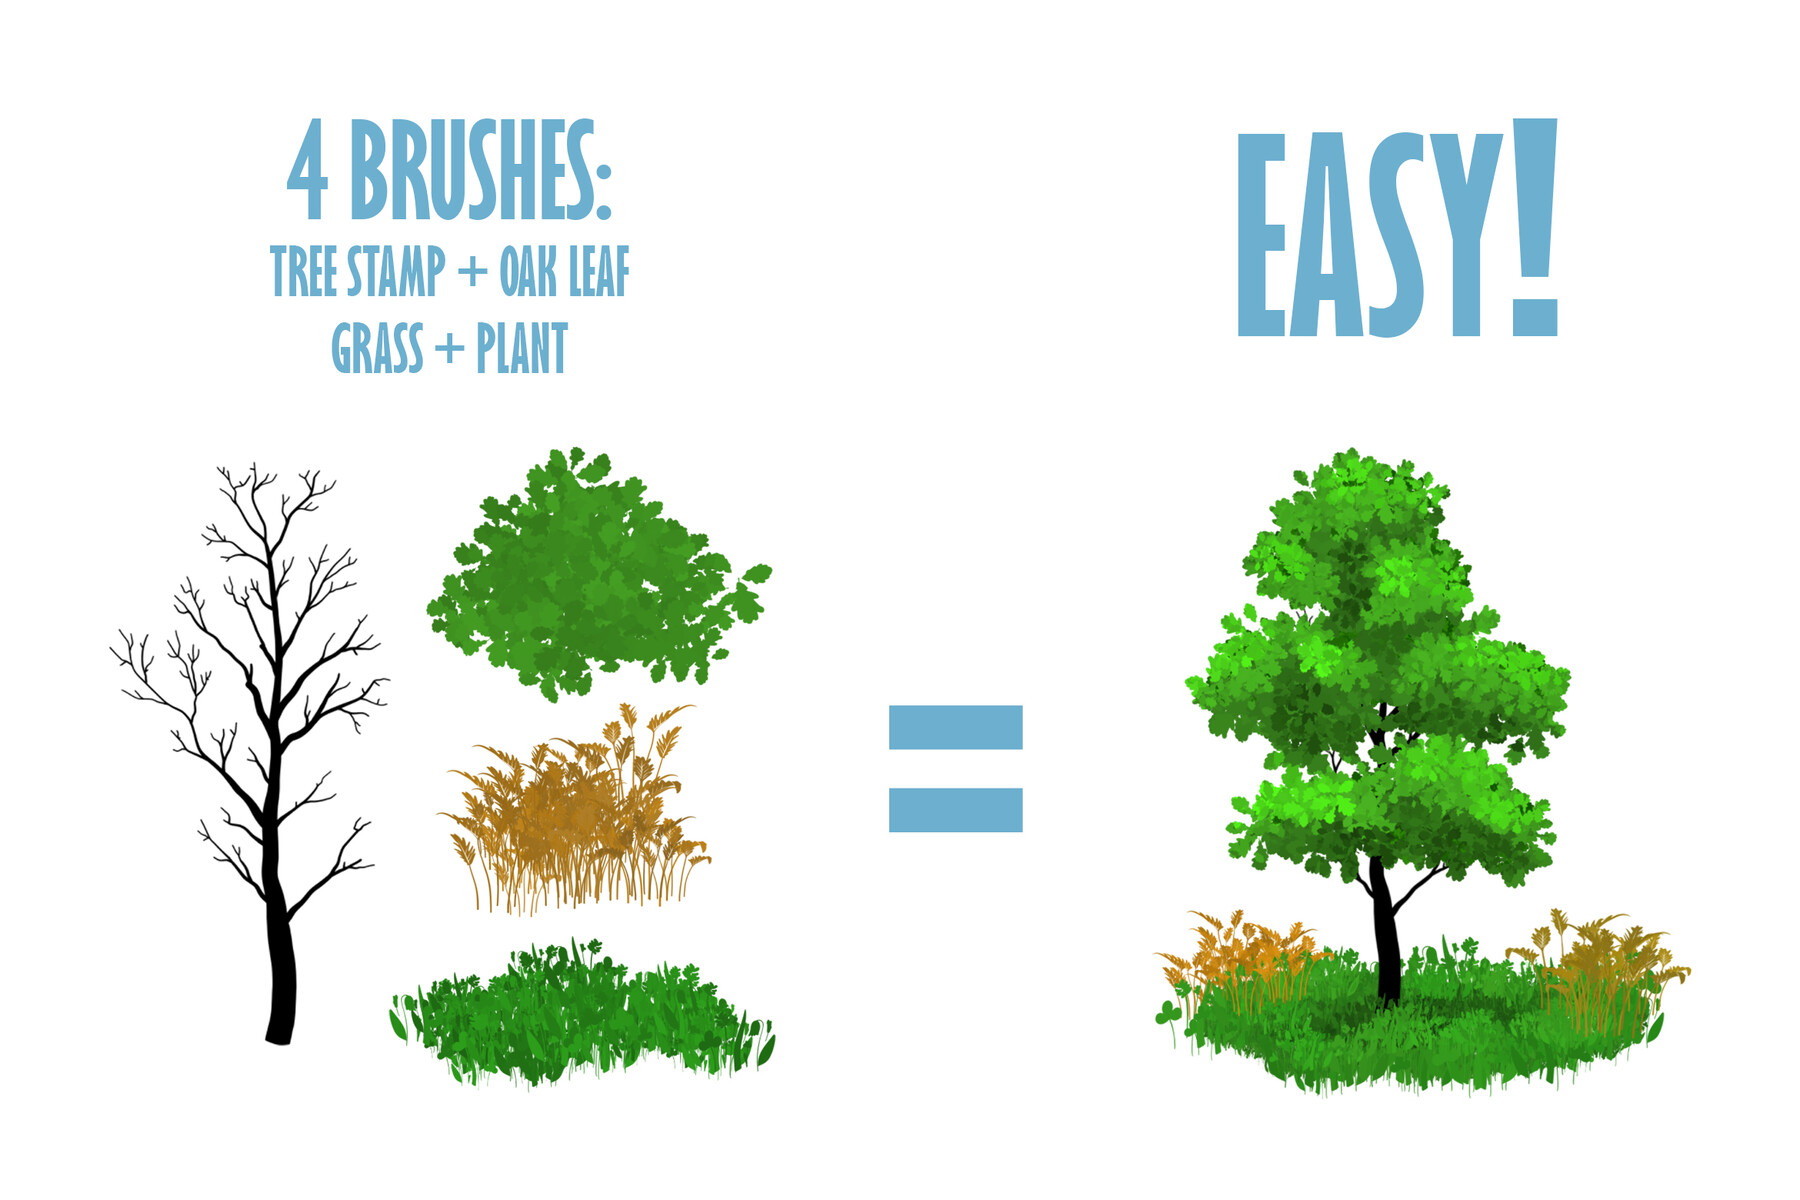 free procreate leaf brushes